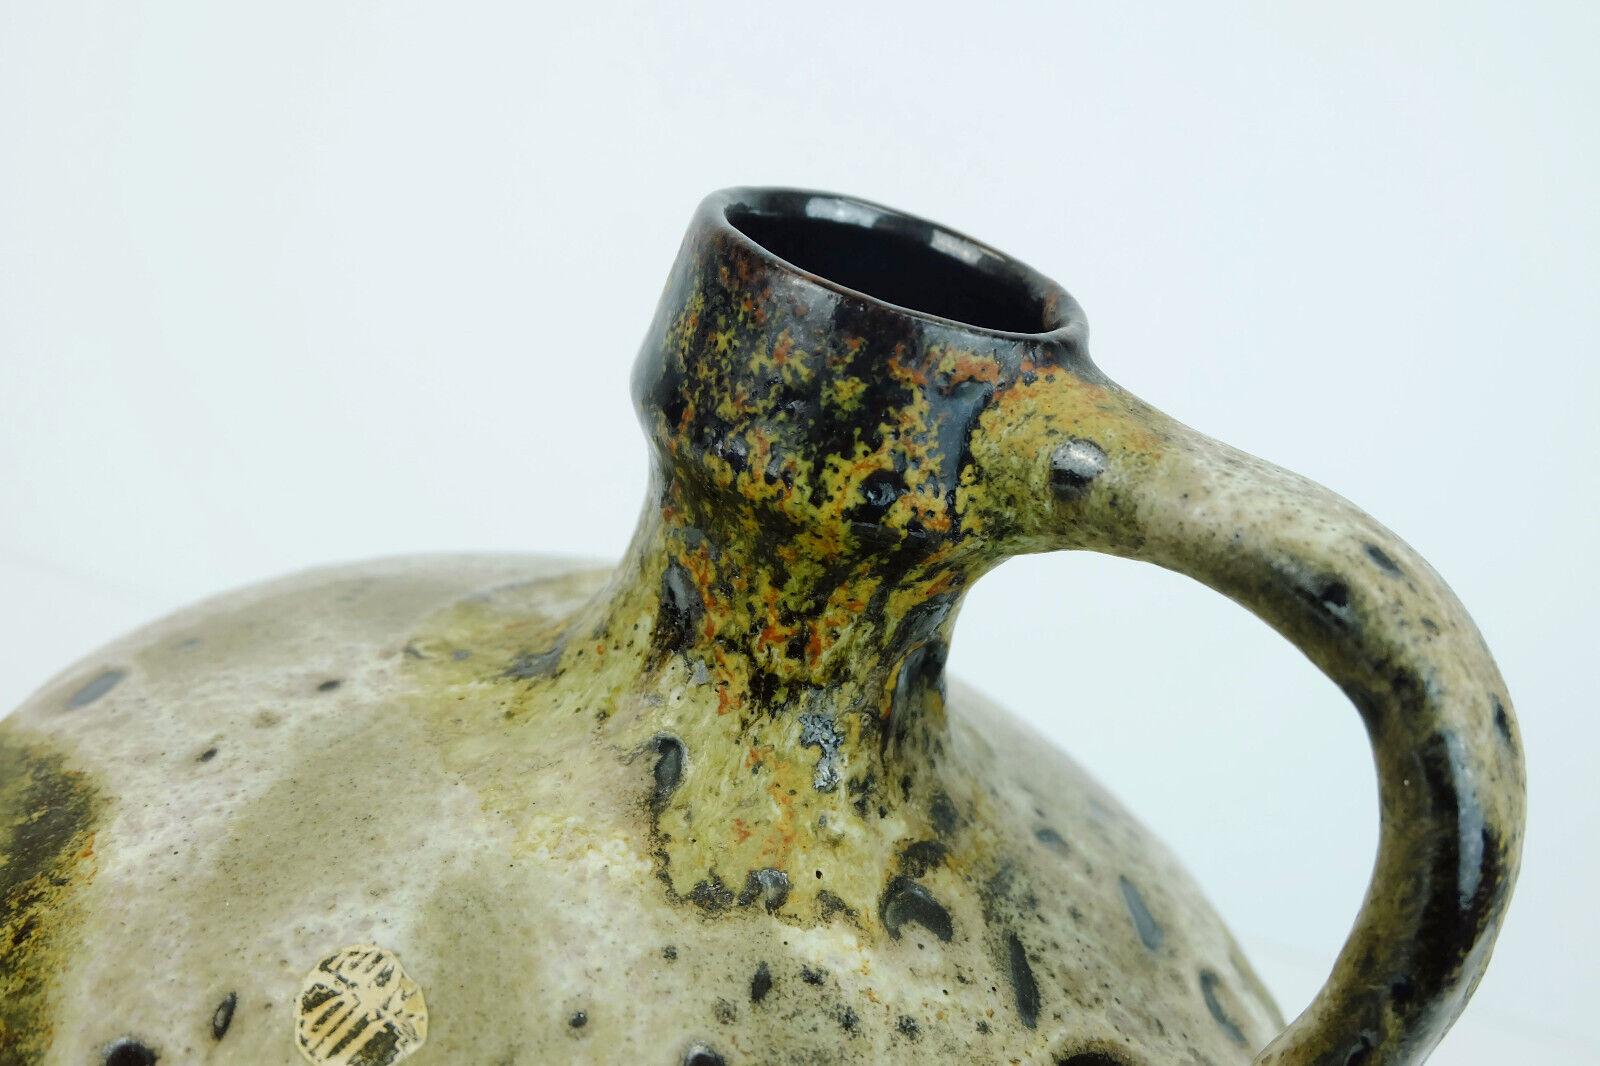 Un fantastique vase vintage d'Allemagne de l'Ouest fabriqué par Ruscha Keramik dans les années 1960-70. Glaçage au goutte-à-goutte dans les tons de brun et de beige avec quelques couleurs vert mousse et rouille. Numéro de modèle 340. 

Très bon